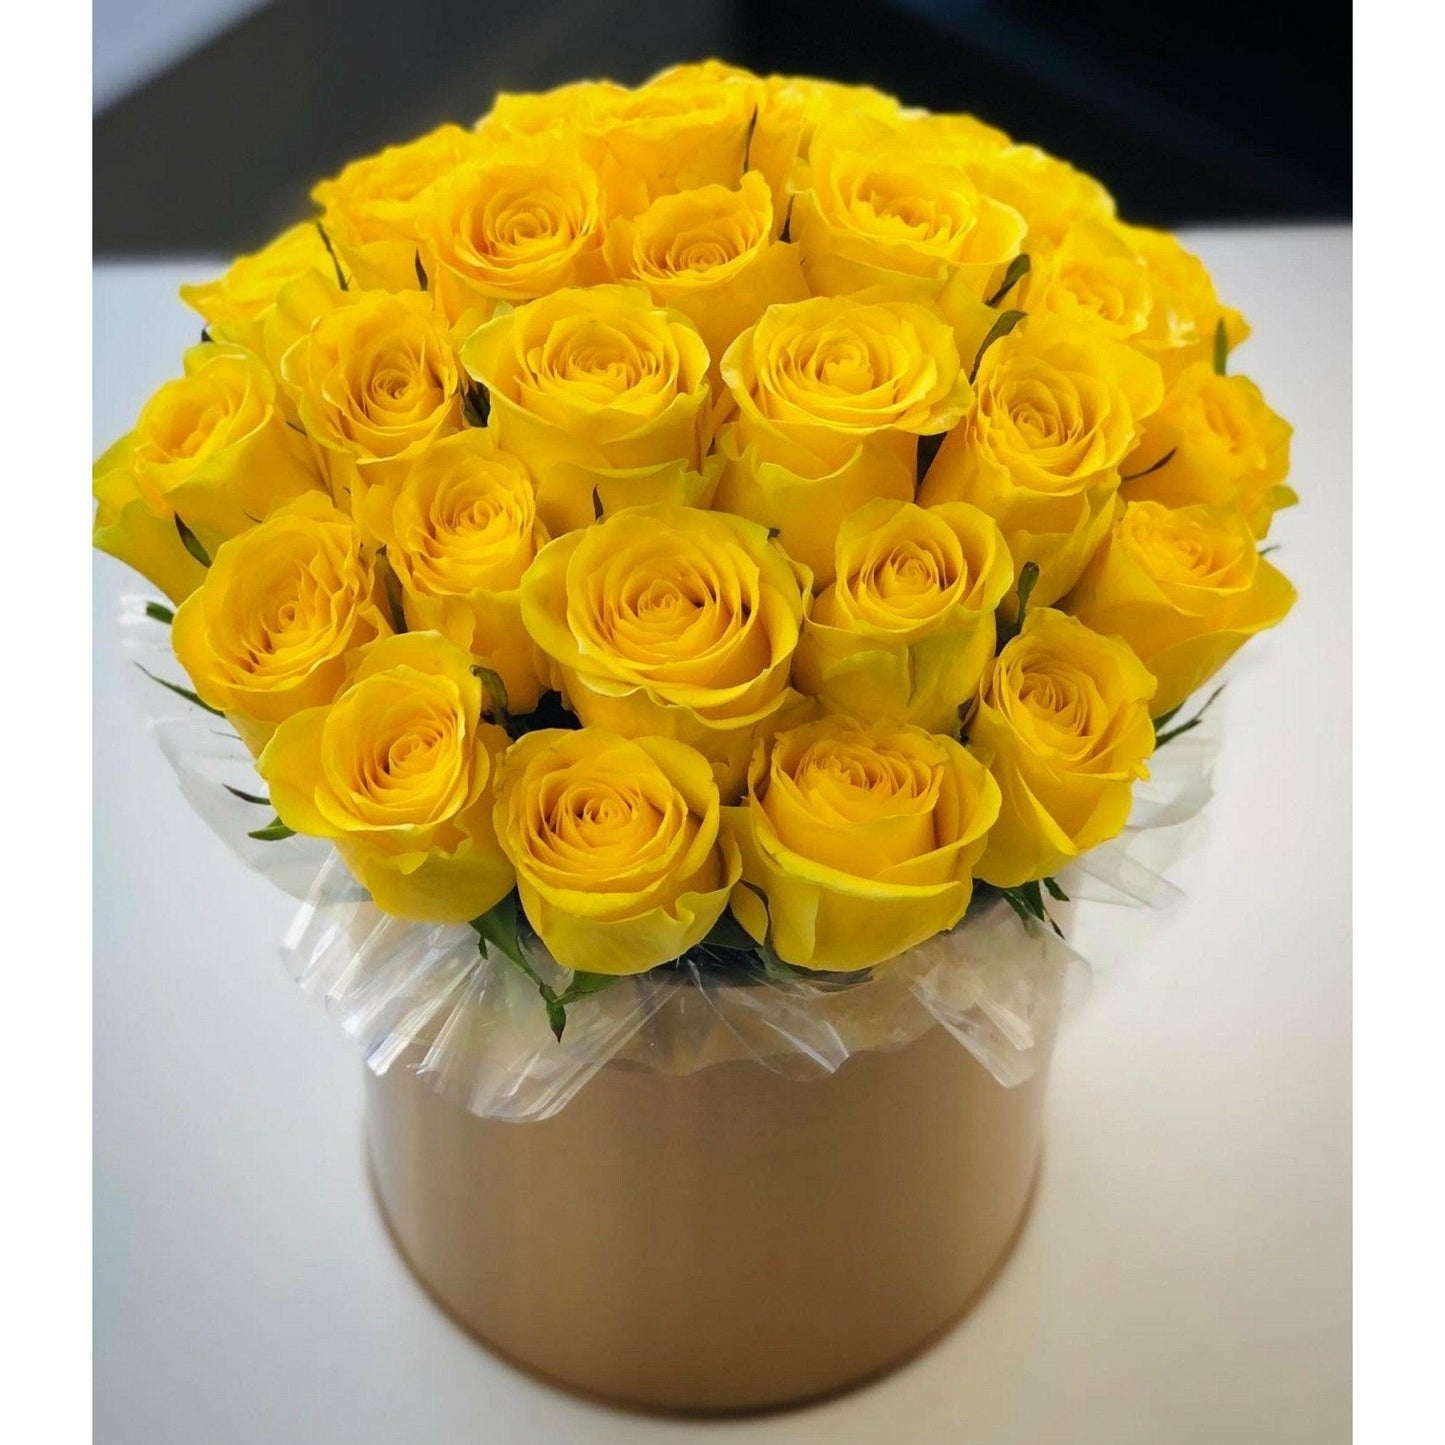 Yellow rose arrangement  - Officeflower